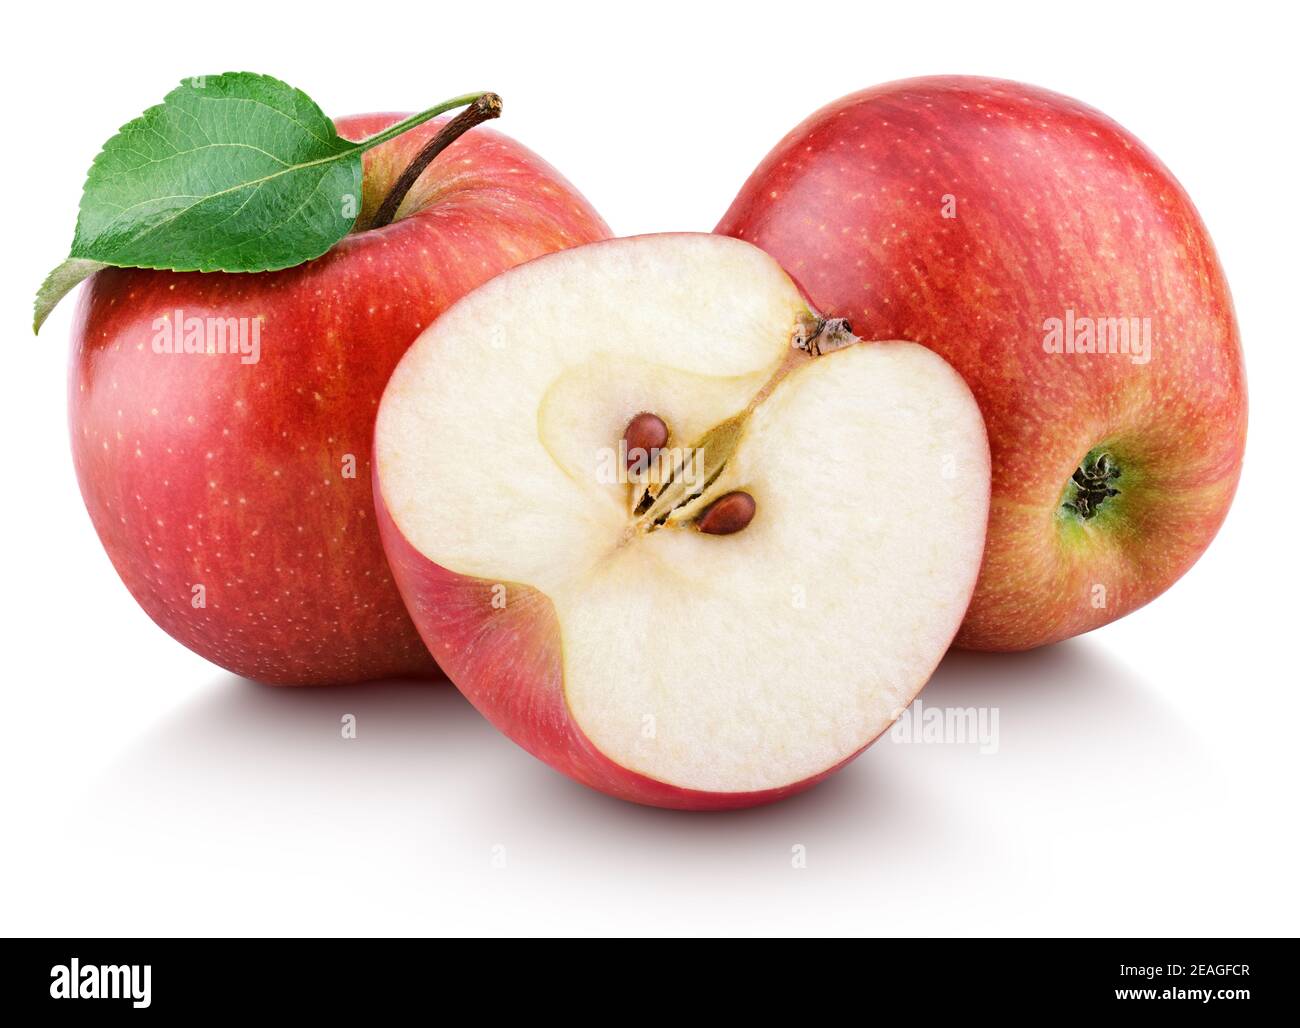 Mela rossa matura con mezzo di mela e foglia verde isolata su sfondo bianco. Mele rosse e foglie con percorso di ritaglio Foto Stock